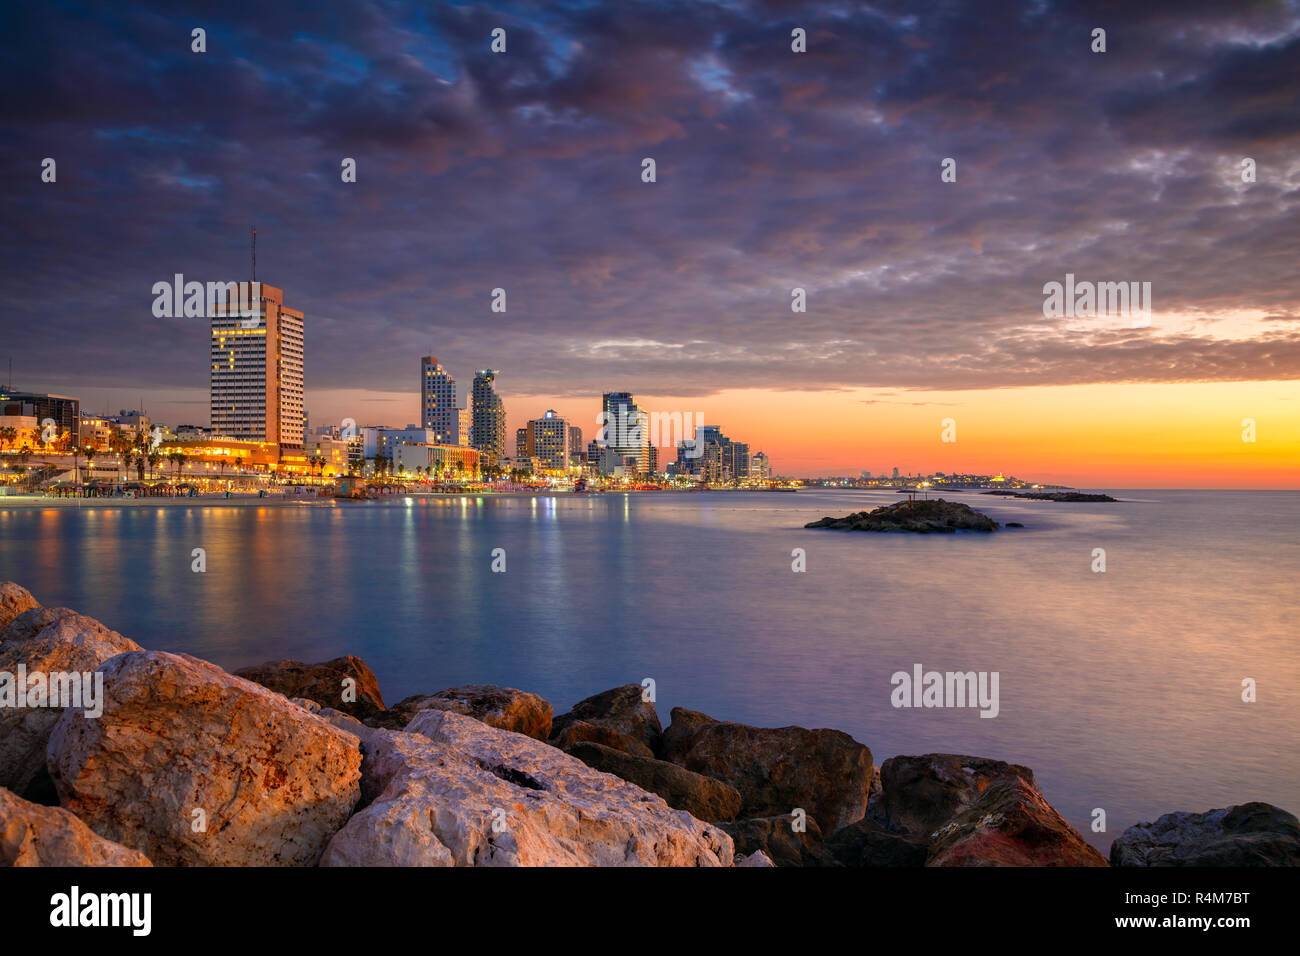 La ville de Tel Aviv. Cityscape image de Tel Aviv, Israël pendant le coucher du soleil. Banque D'Images